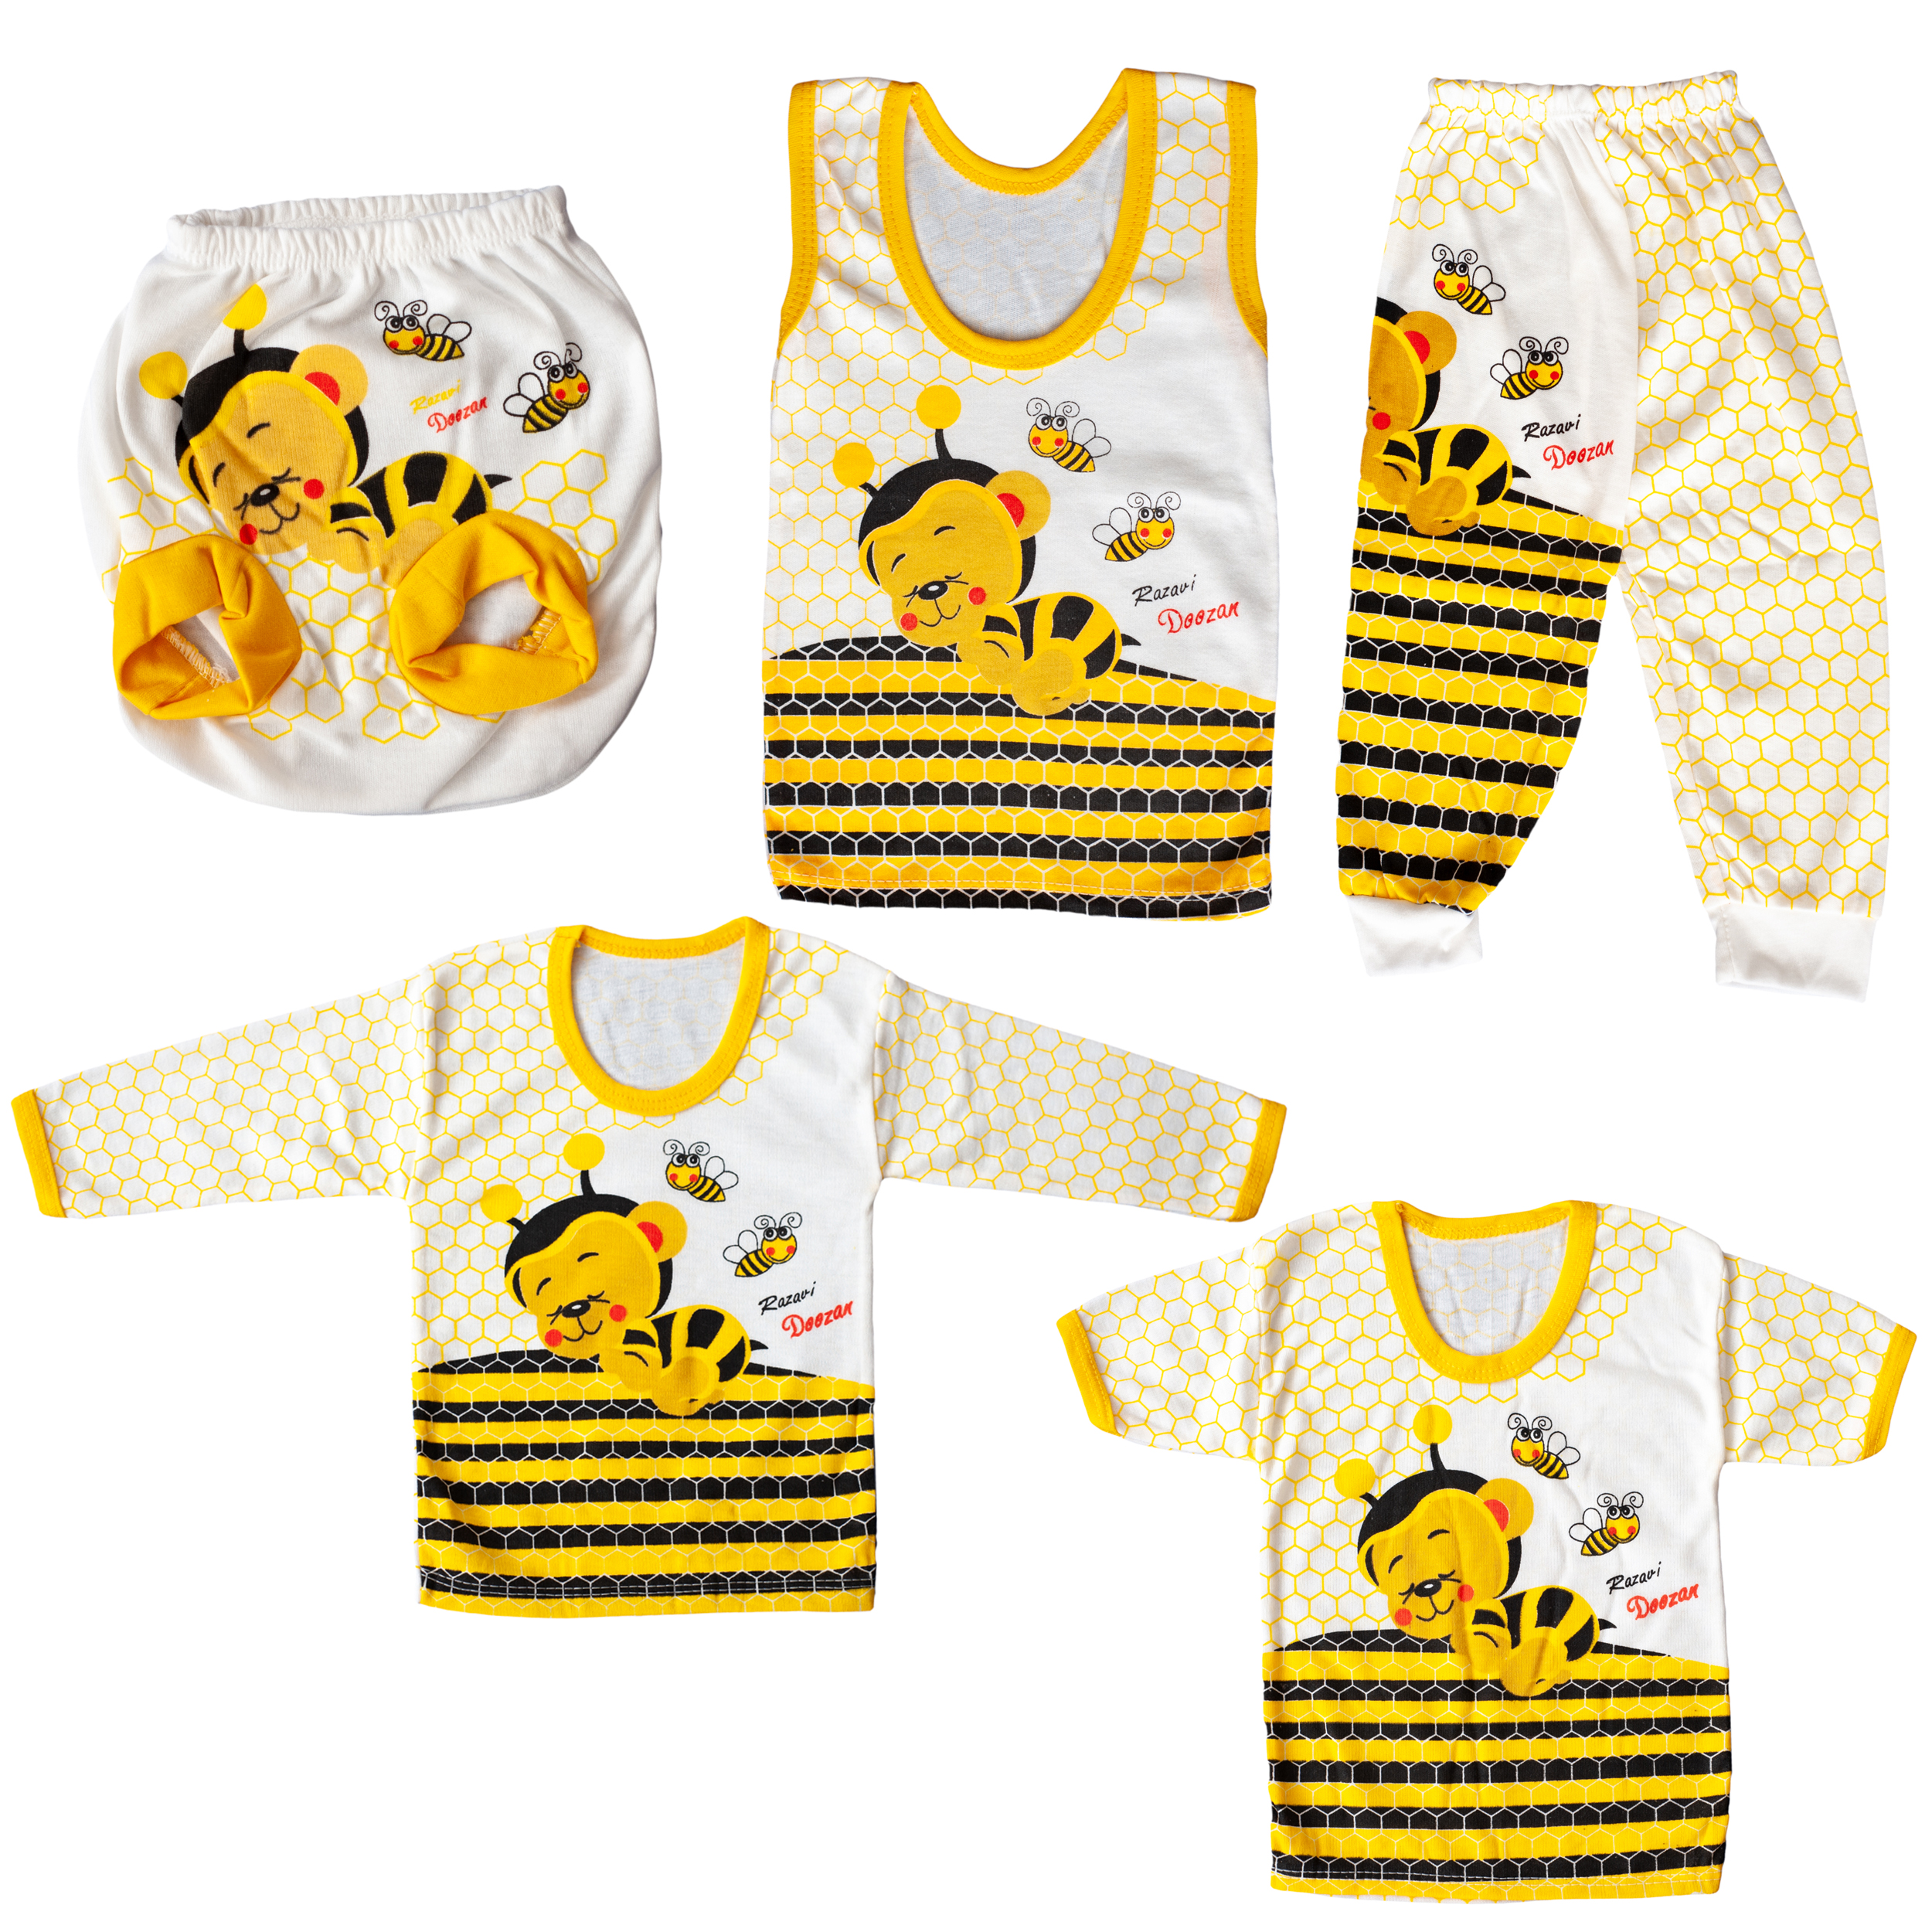 نقد و بررسی ست 5 تکه لباس نوزادی کد A15 توسط خریداران